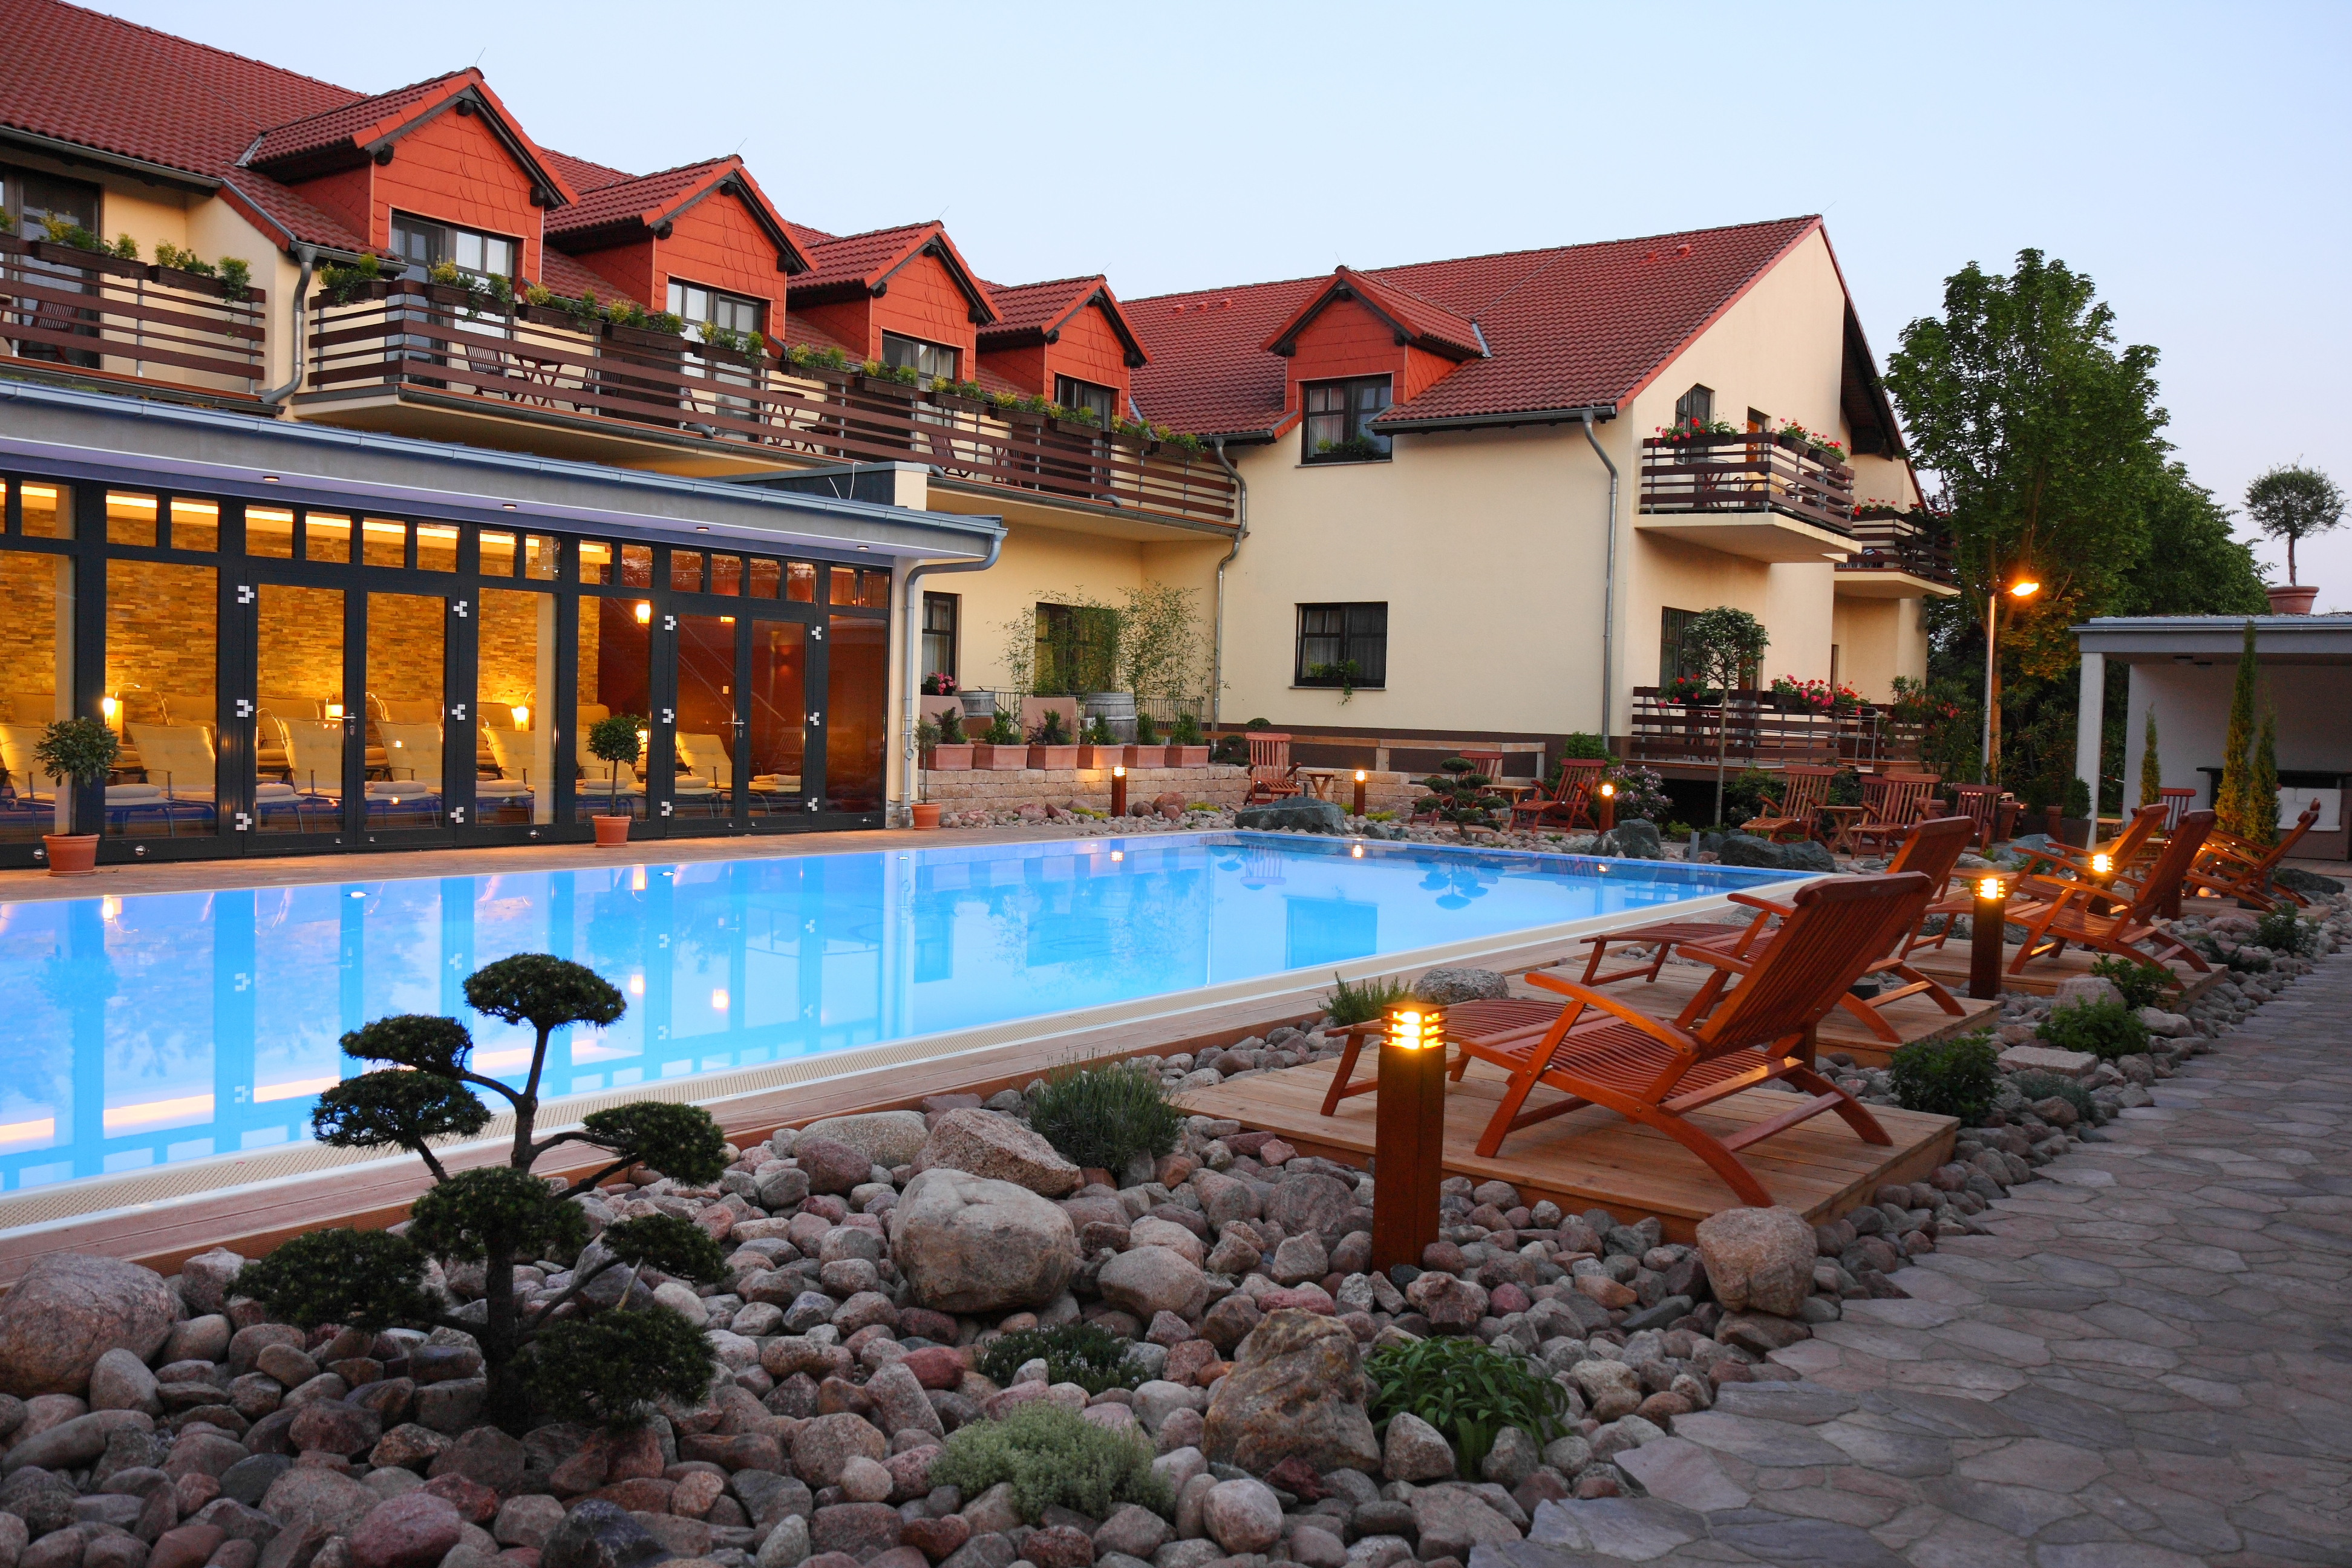 Außenbereich des Hotels mit Pool 